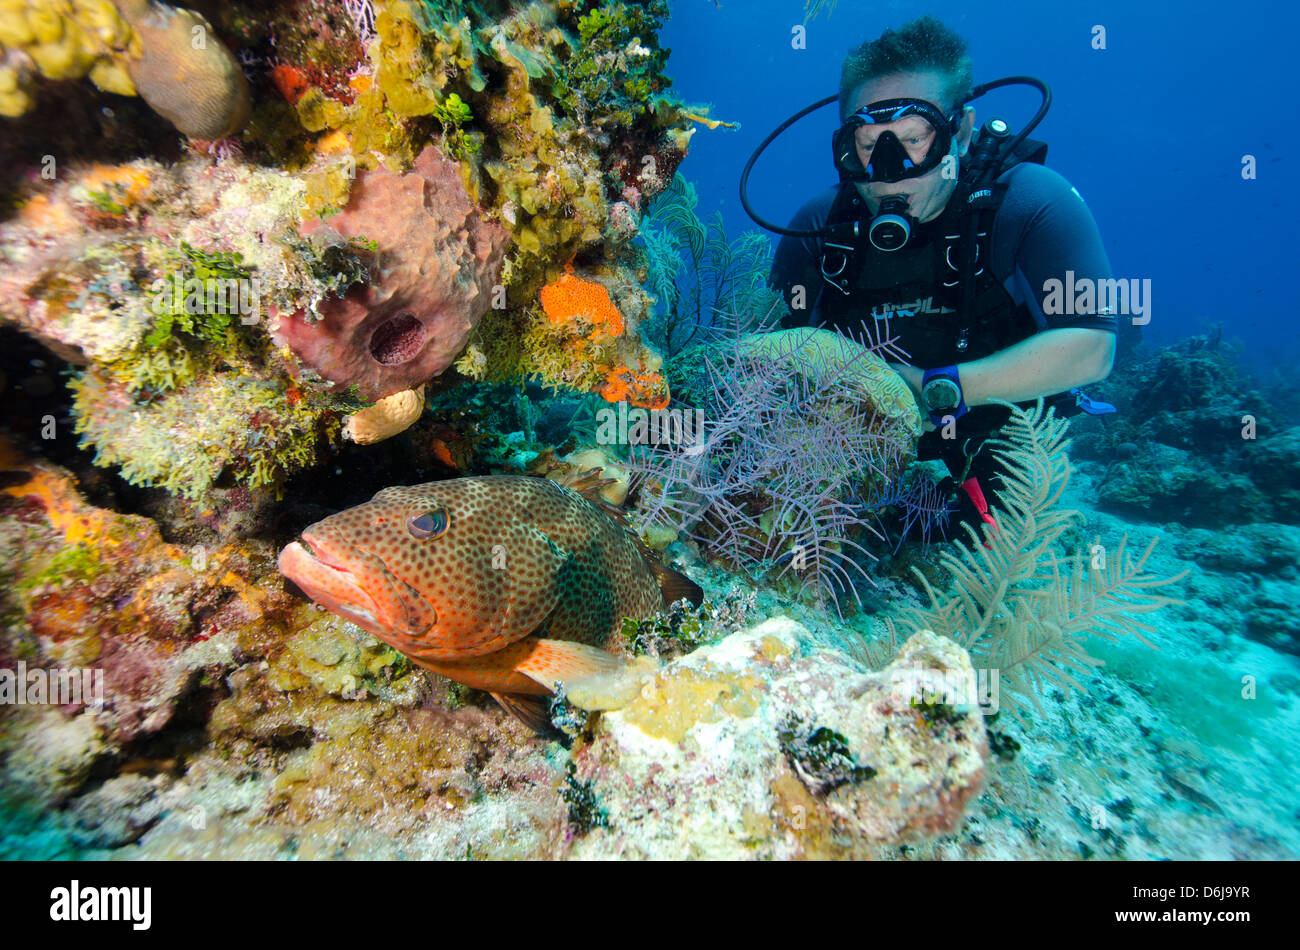 Taucher genießt gerade ein Zackenbarsch, versteckt in den Korallen in Turks- und Caicosinseln, West Indies, Karibik, Mittelamerika Stockfoto